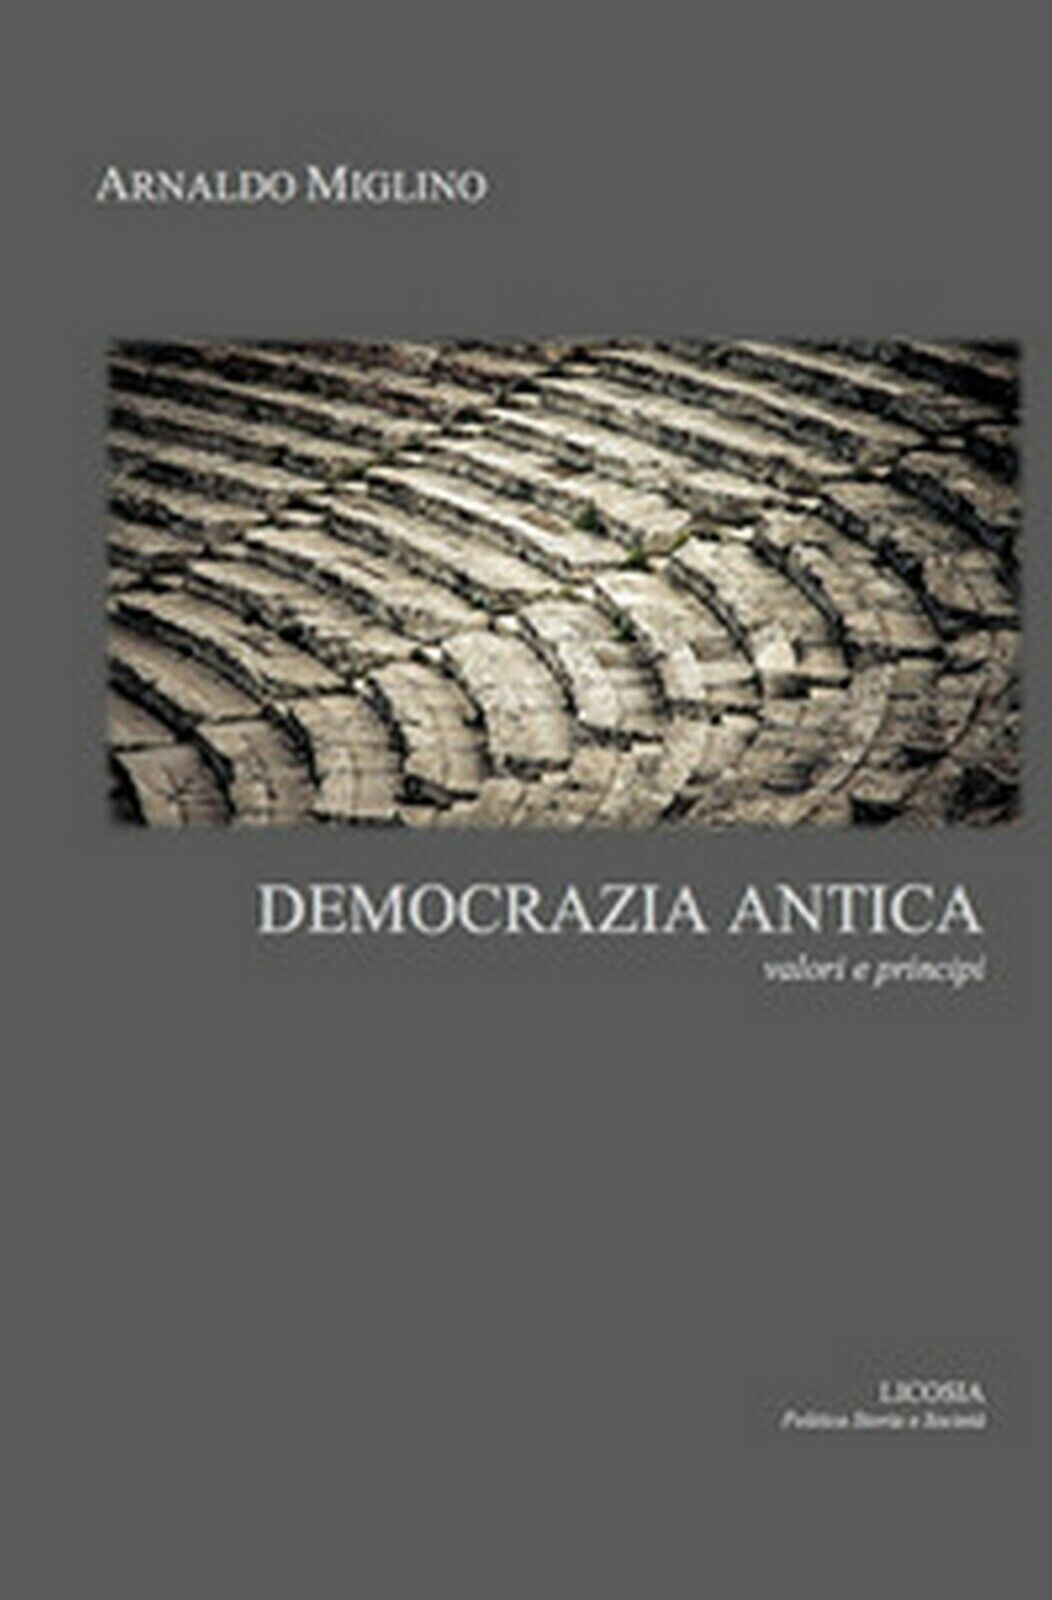 Democrazia antica. Valori e principi  di Arnaldo Miglino,  2017,  Licosia